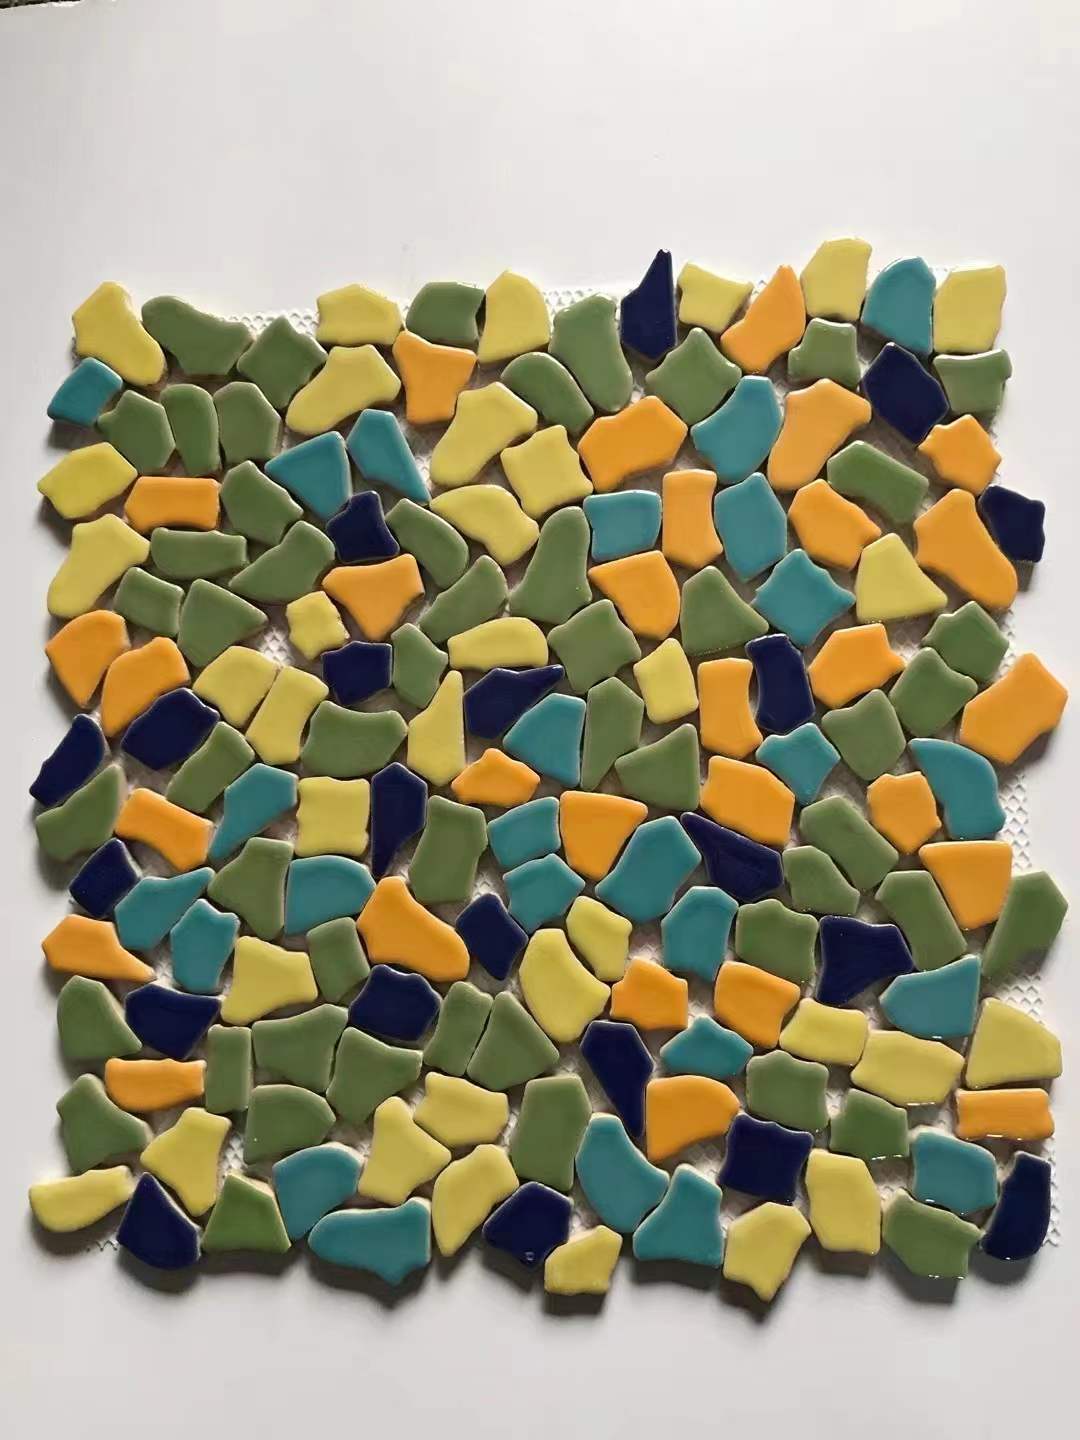 Colorful Pebble Mosaic Tile